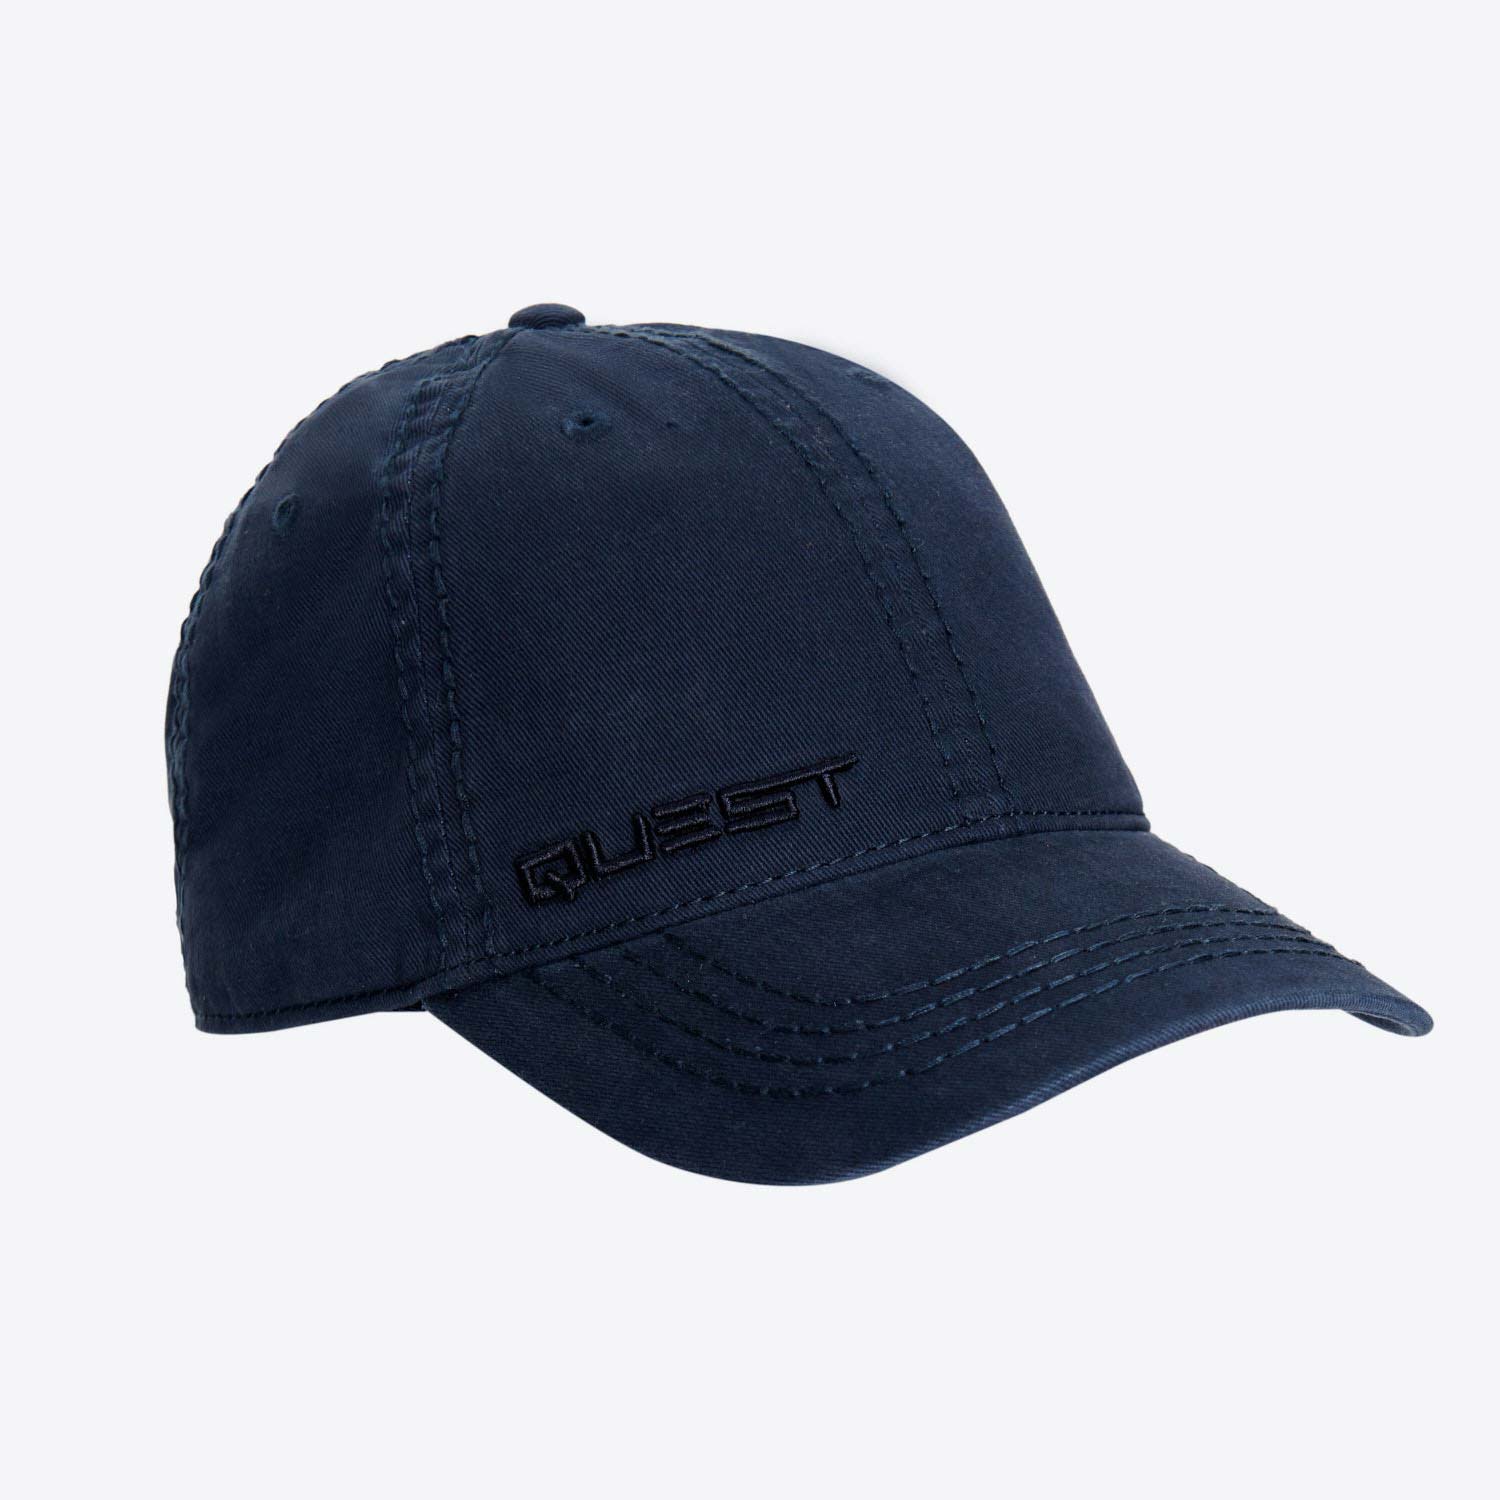 Comprar la gorra LA azul oficial